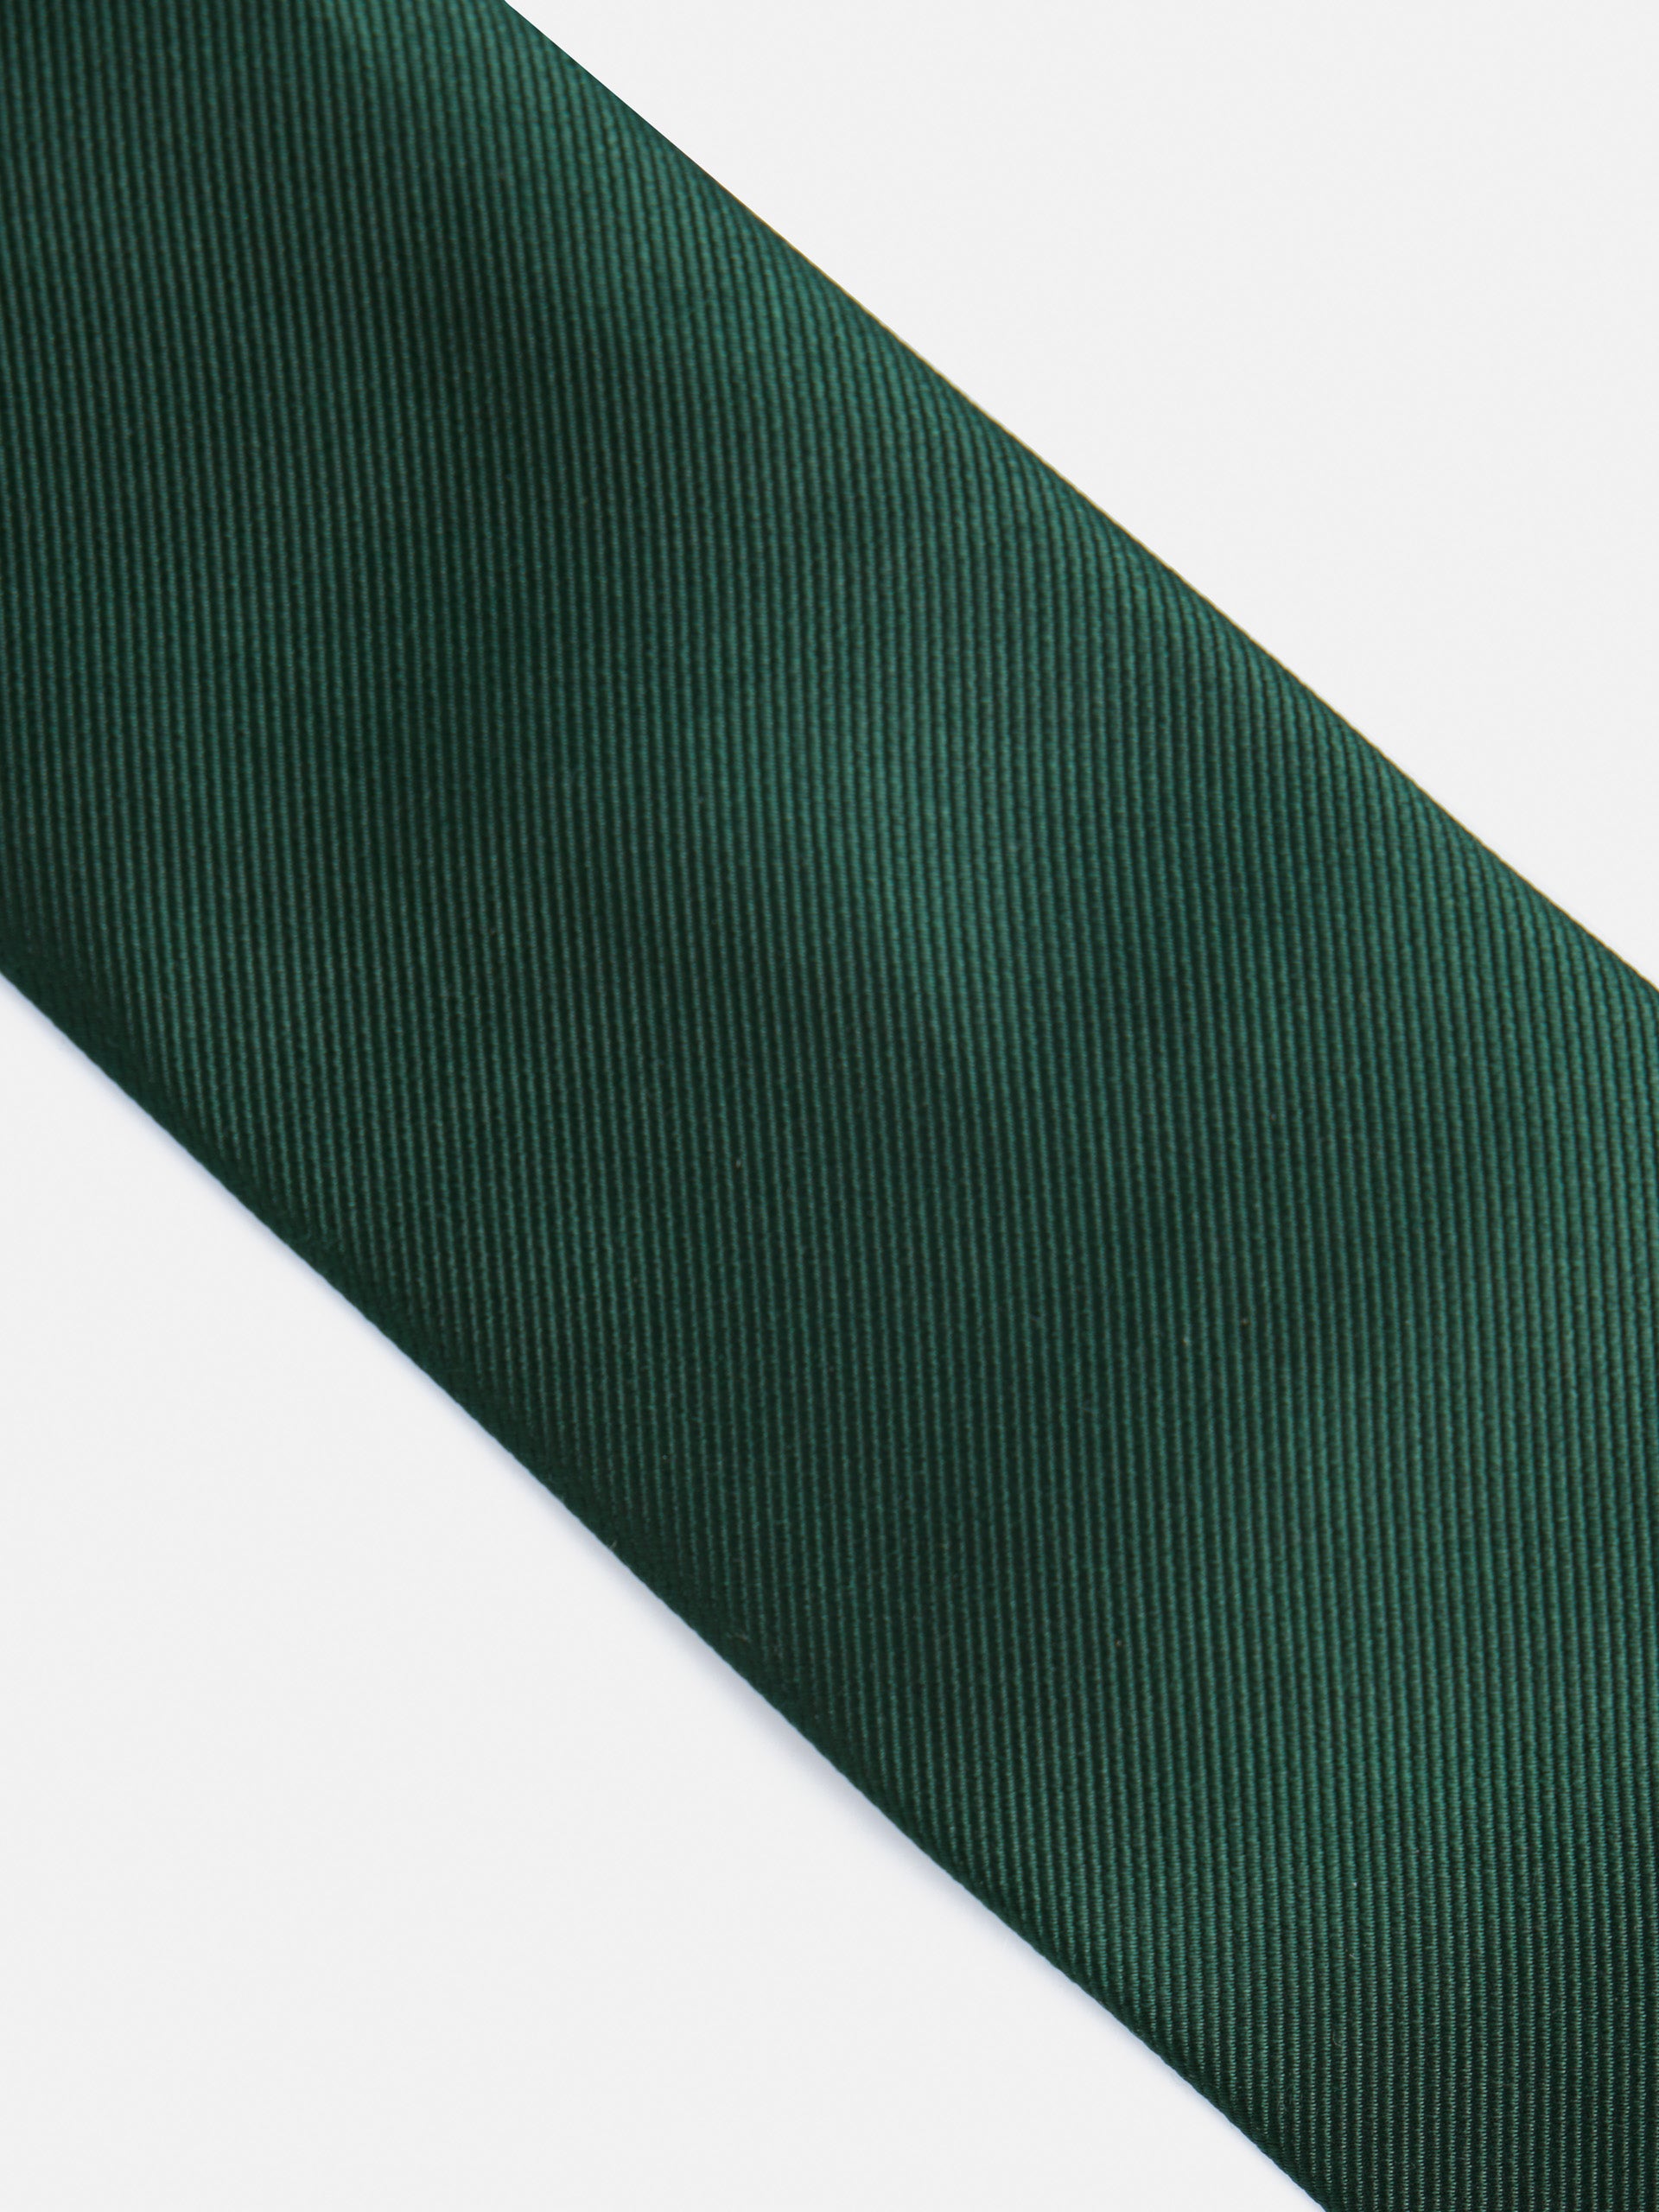 Smooth green silbon tie